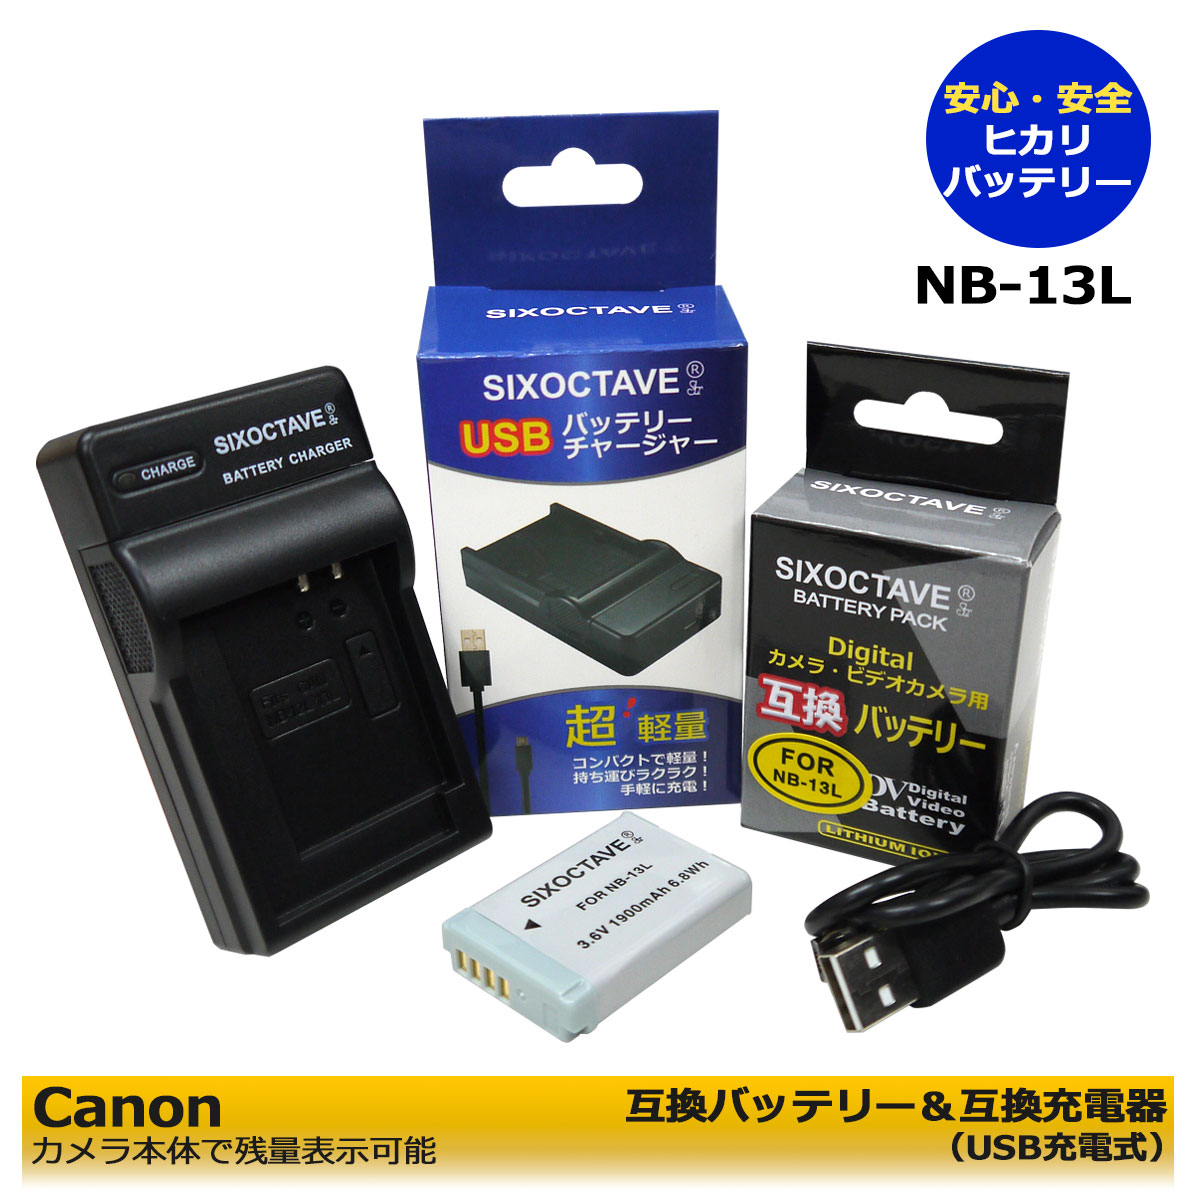 キャノン NB-13L Micro USB付き 急速充電器 互換品